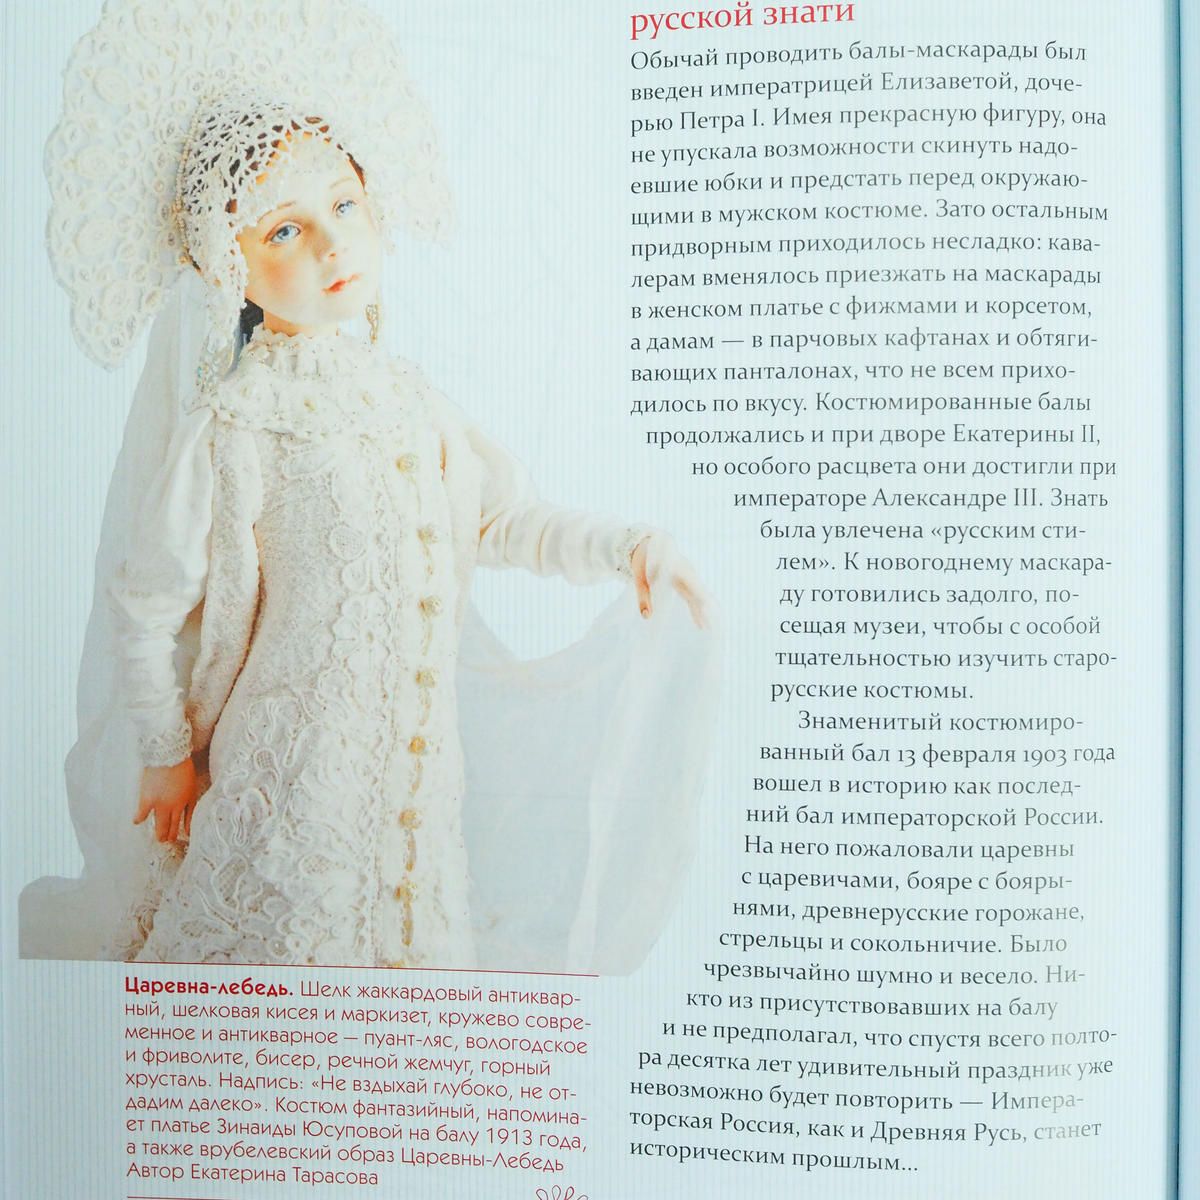 イスクーストバ ロシア 東欧のアートブック専門店 ロシアの民族衣装大全 可愛らしい人形とイラストでロシア の伝統的な民族衣装を紹介 ココシニク サラファン ルバシカといった各アイテムを簡単な裁断図を載せながら詳細に解説しています イラストや創作